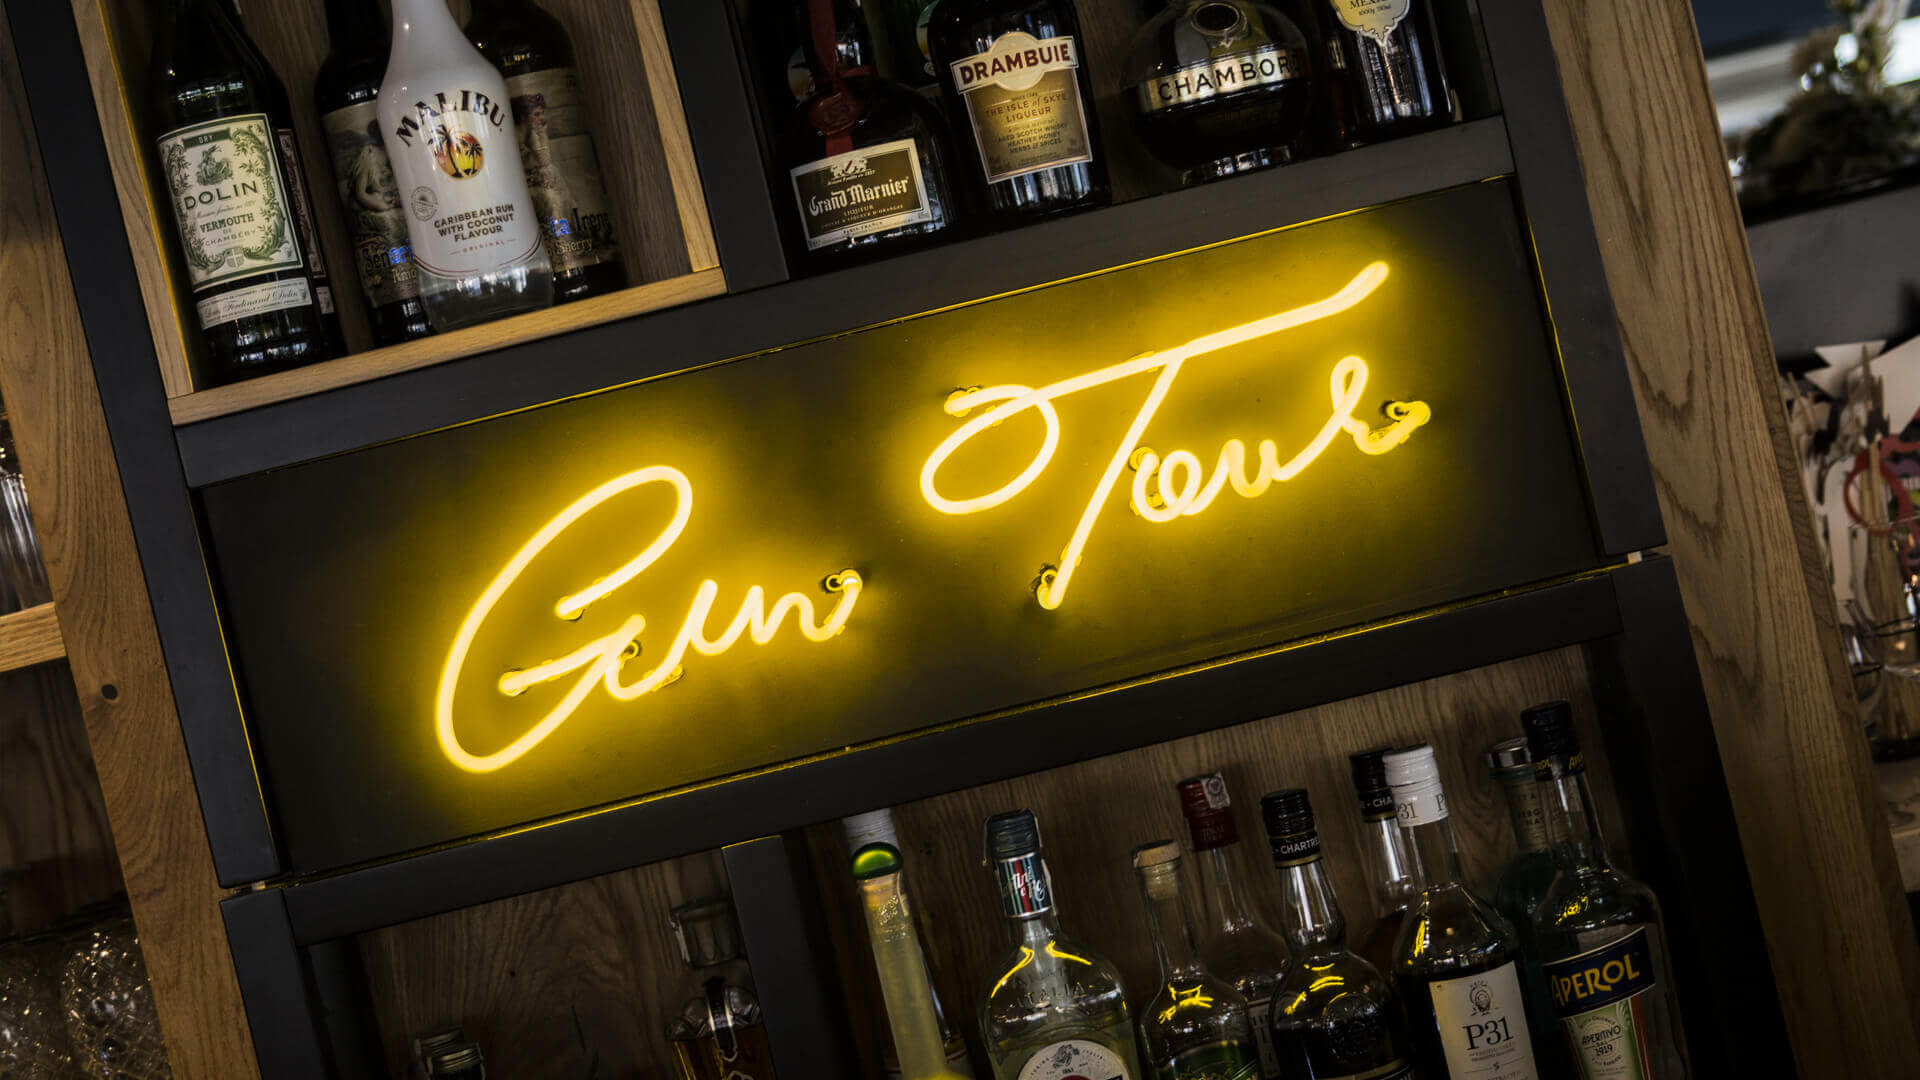 Gintur Gin Tour - Gin-Tour-Neon-hinter-der-Bar-im-Restaurant-Neon-an-der-Wand-unter-der-Beleuchtung-auf-weißem-Glas-Neon-Firmenlogo-Neon-auf-der-Polnische-zwischen-den-Flaschen-szafarnia10-gdansk (21) 